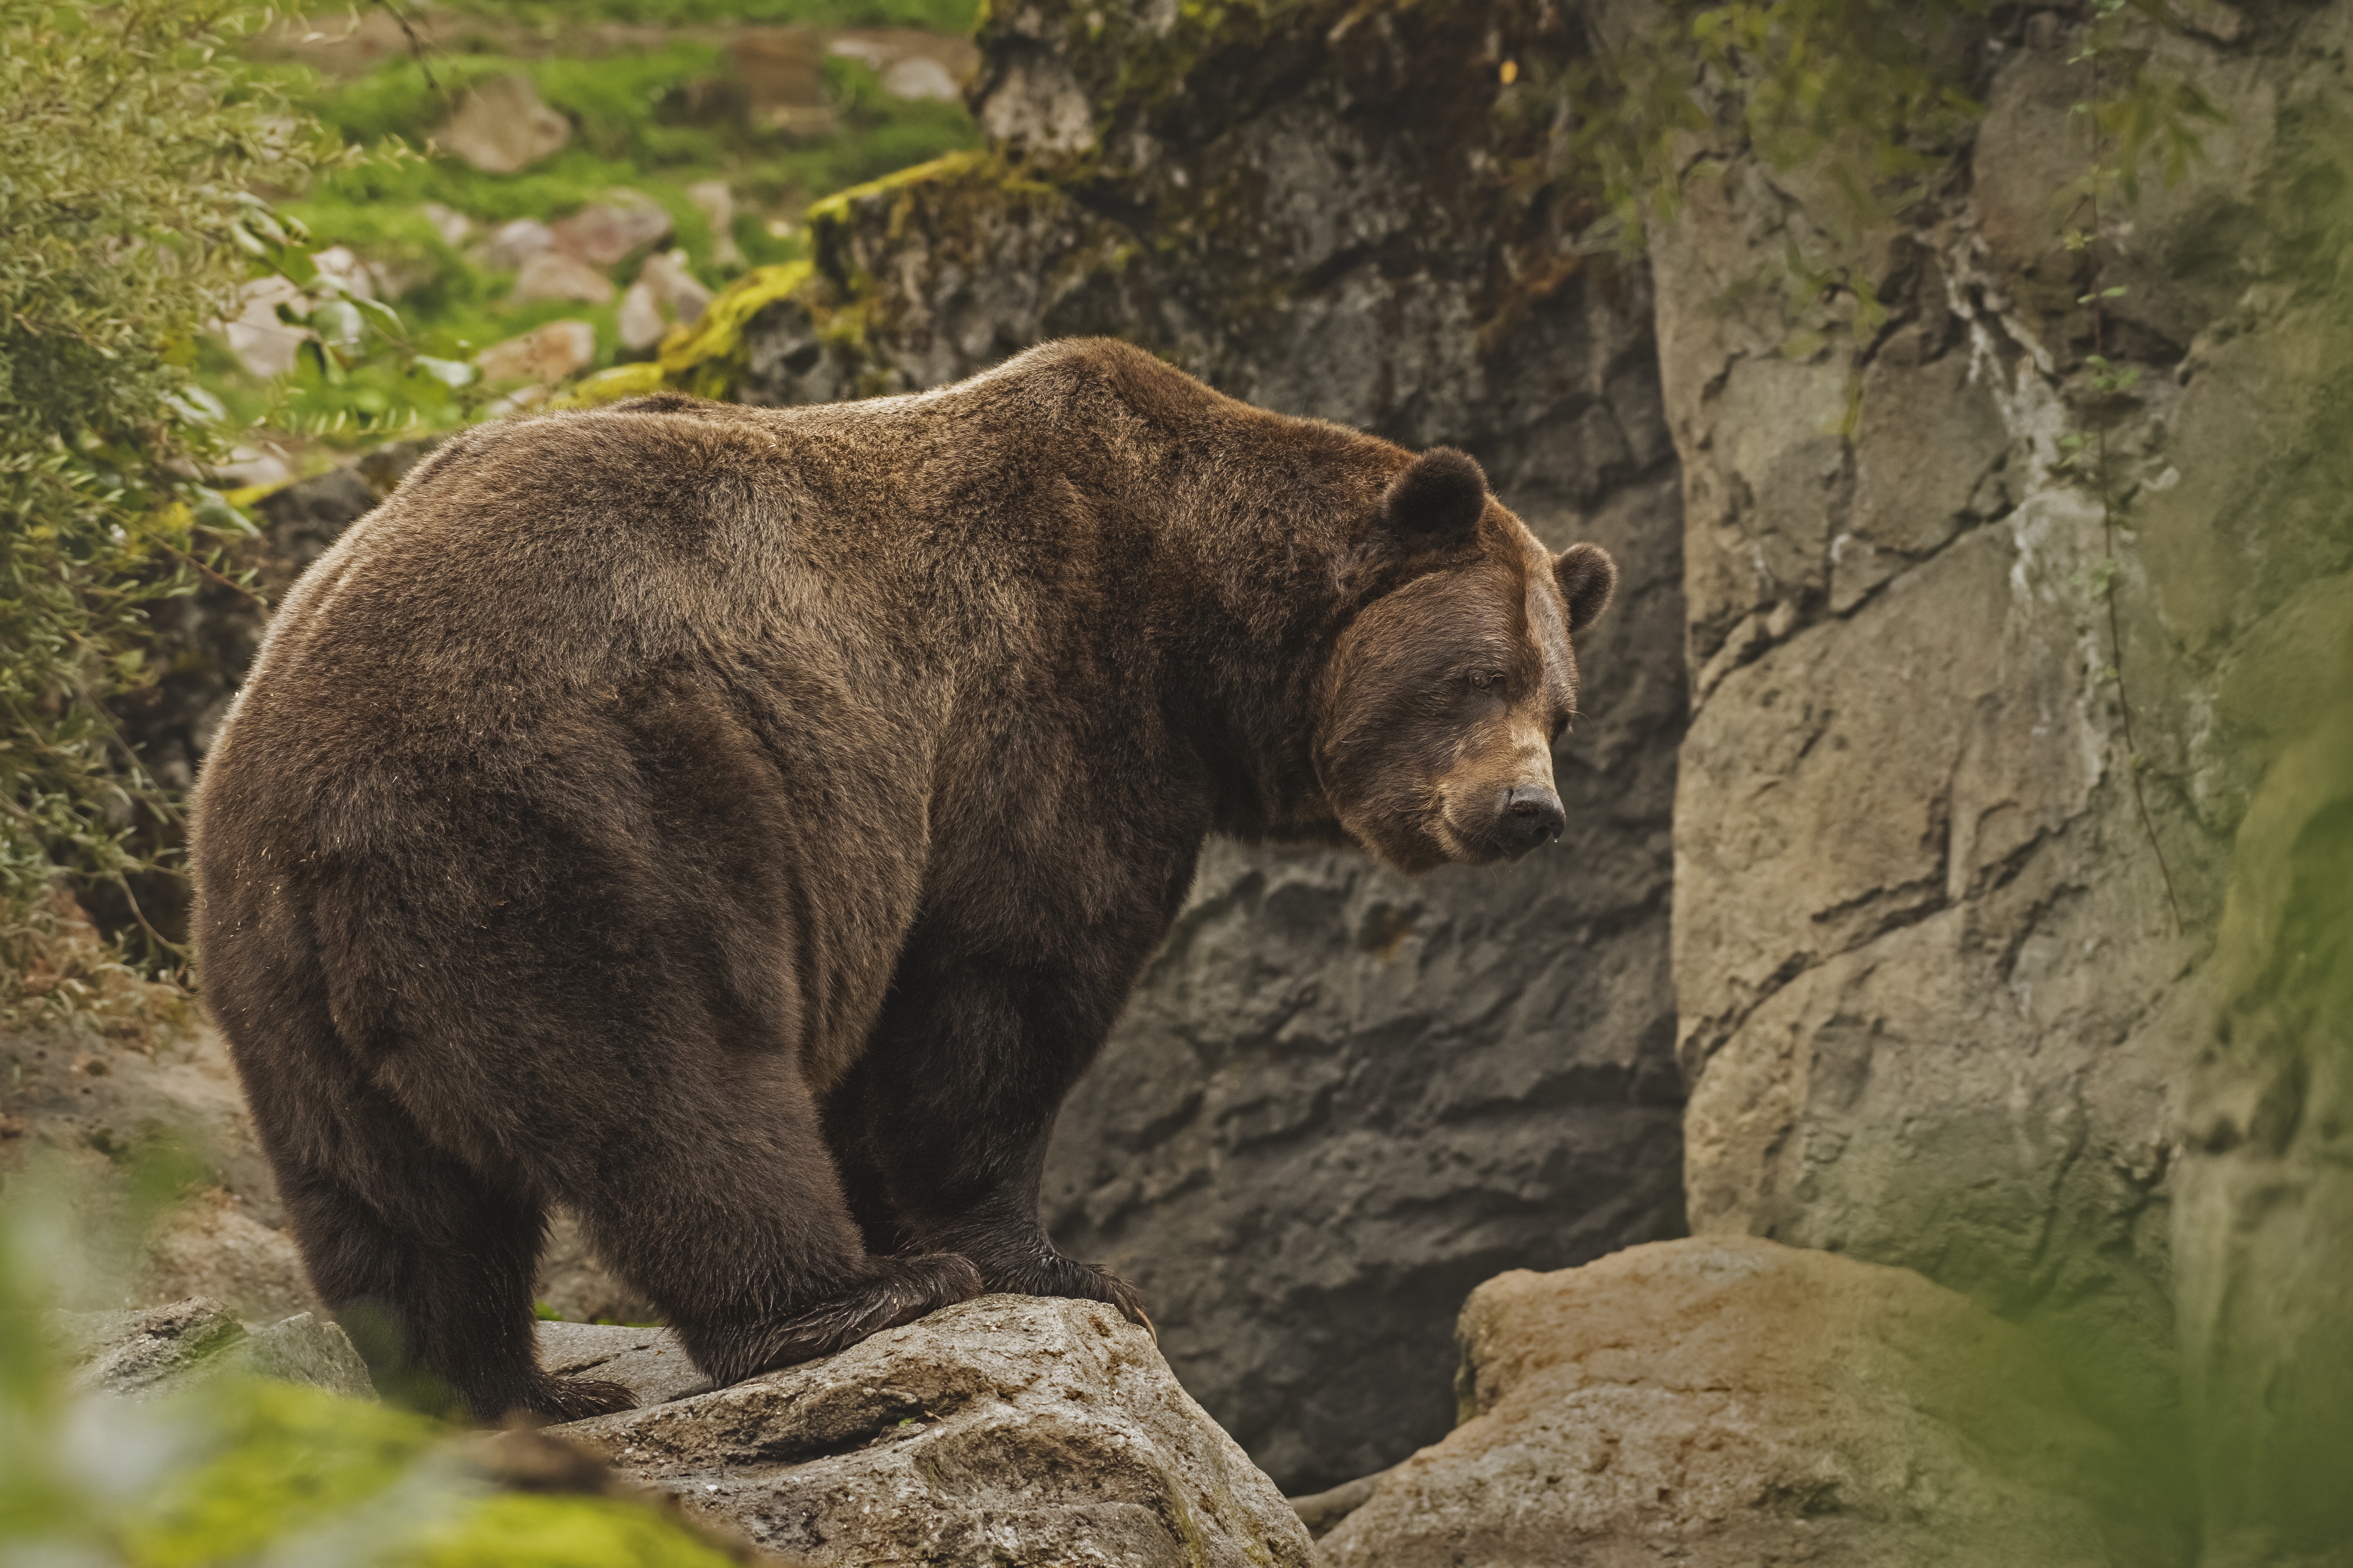 День медведя отмечается ежегодно 13 декабря во многих регионах России.